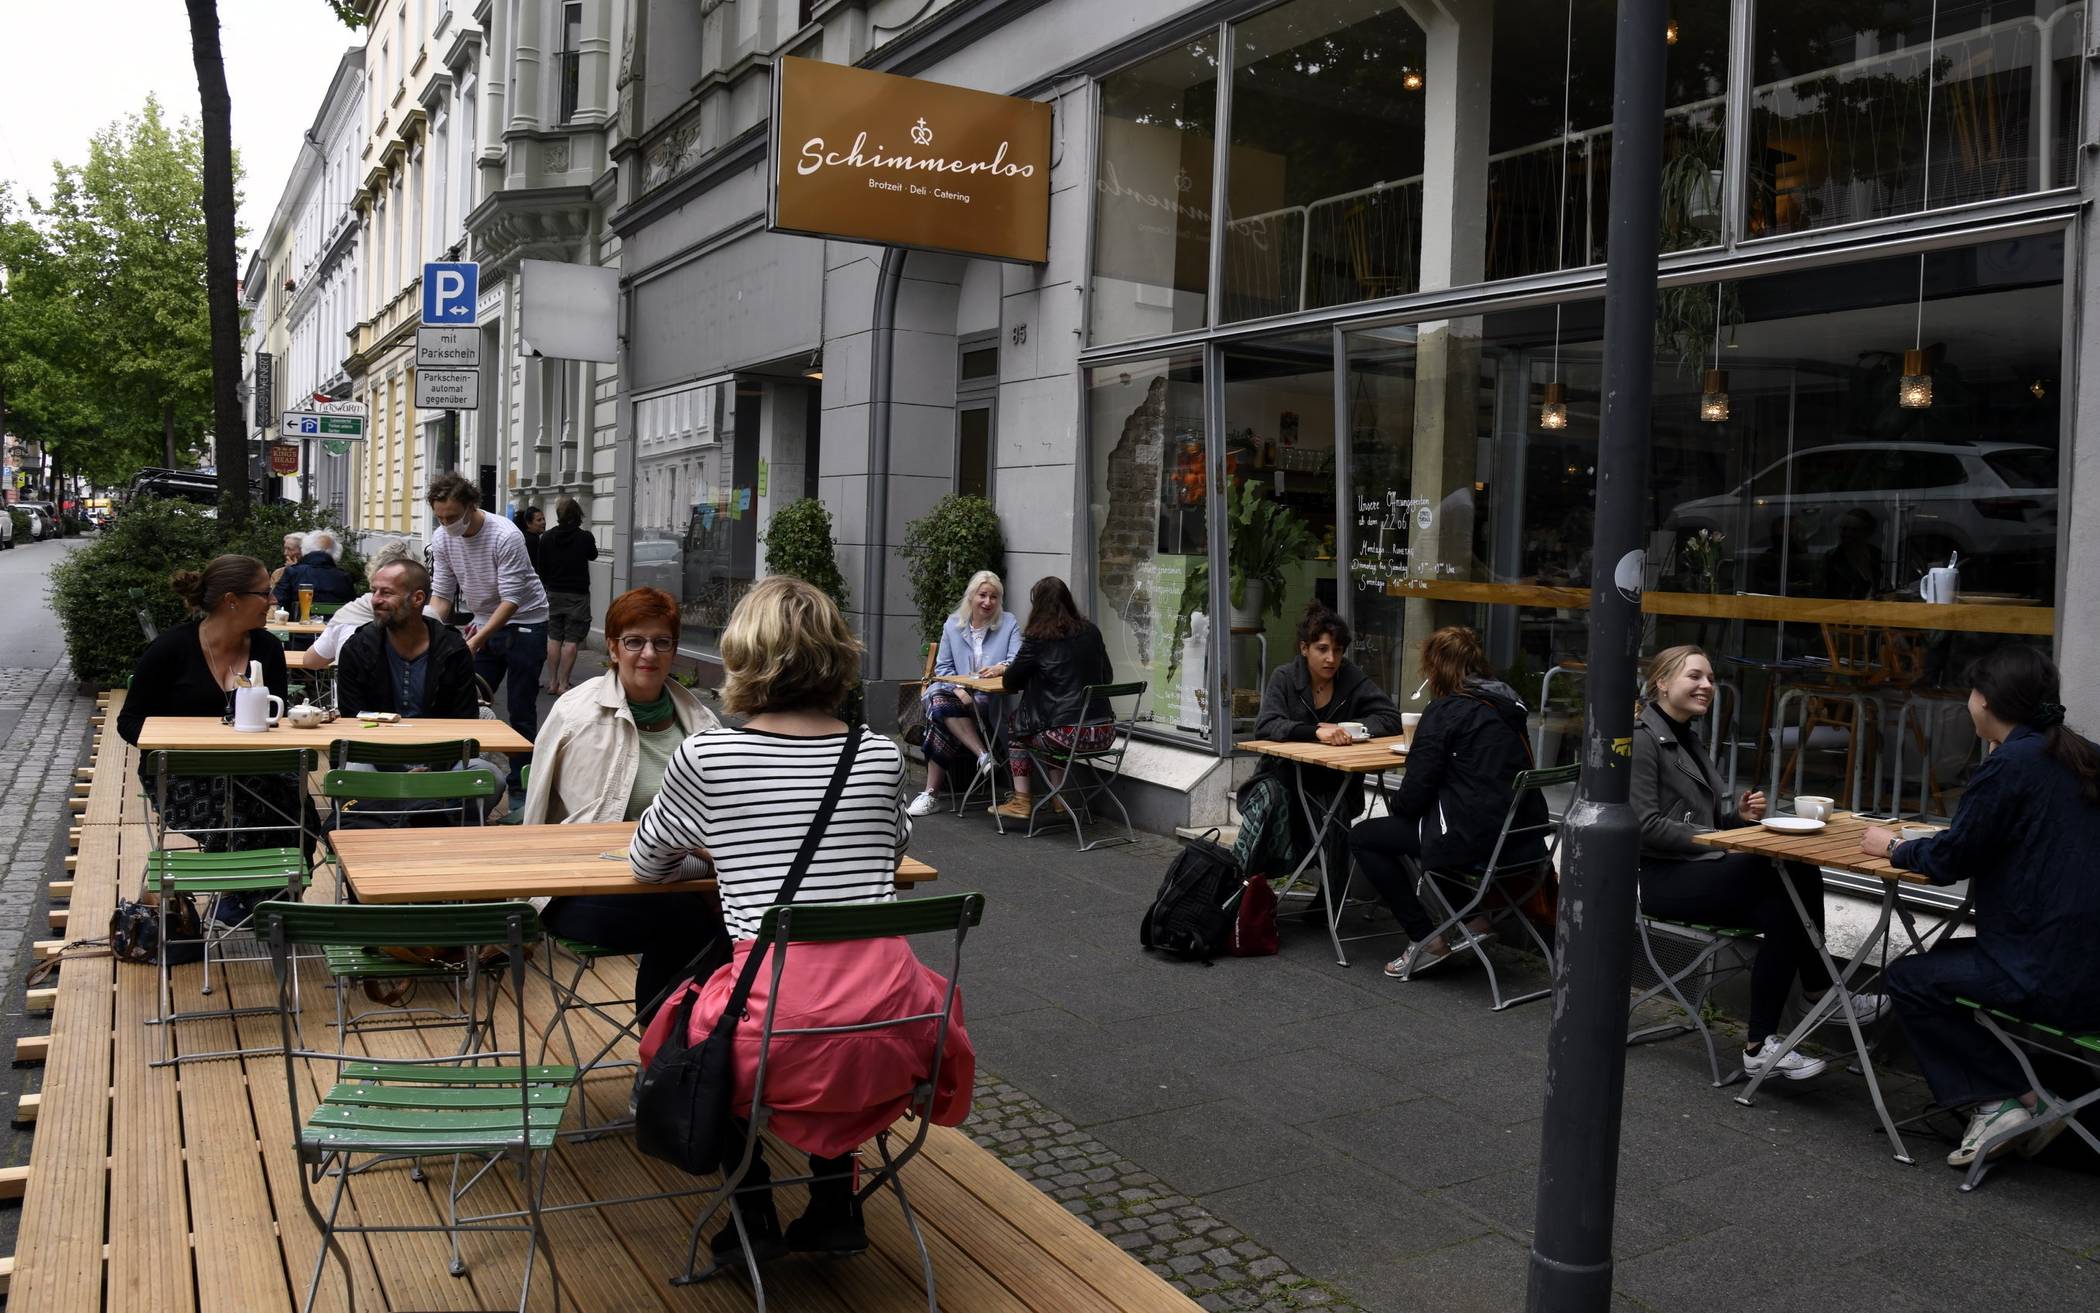  Im Café Schimmerlos an der Friedrich-Ebert-Straße freut man sich über zusätzliche Außenplätze auf dem Parkstreifen links. Die nötige Abtrennung zur Straße ist noch in Arbeit. Dieses Szenario könnte uns demnächst im Stadtbild noch viel öfter begegnen. 